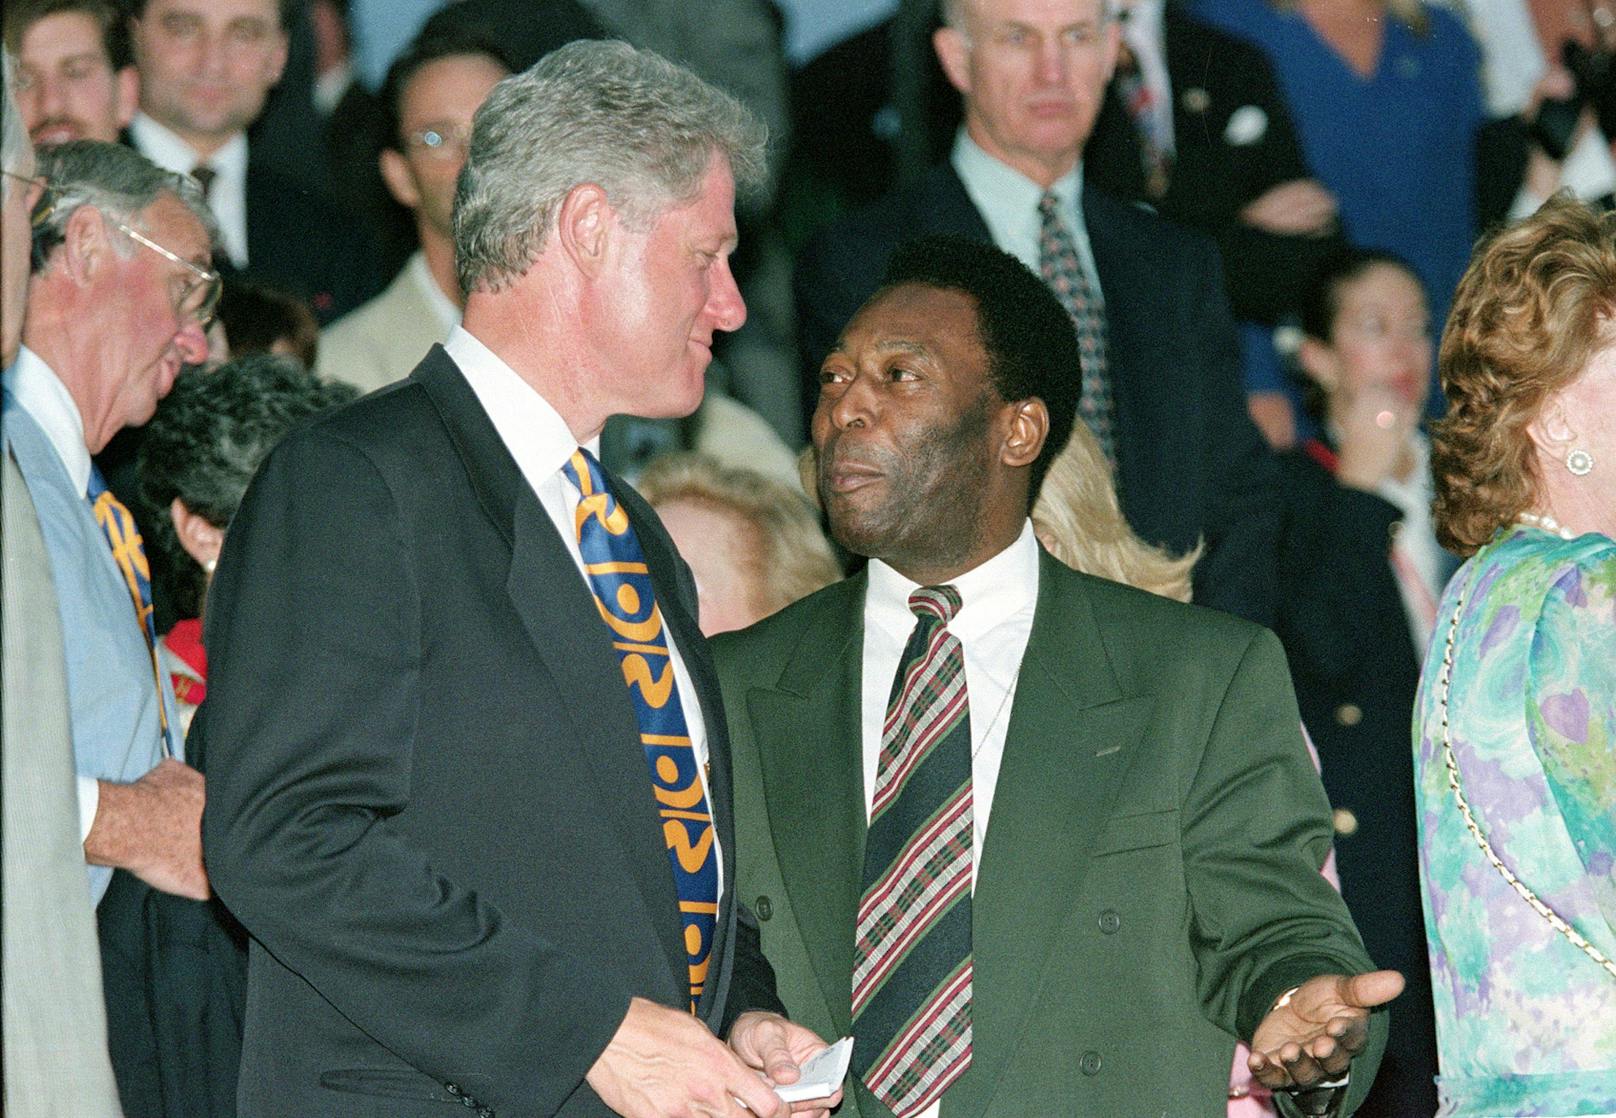 Zwischen 1995 und 1998 erfüllte Pele das Amt als brasilianischer Sportminister. Im Rahmen seiner Aufgaben kam es zu einem Treffen mit dem damaligen US-Präsidenten Bill Clinton.